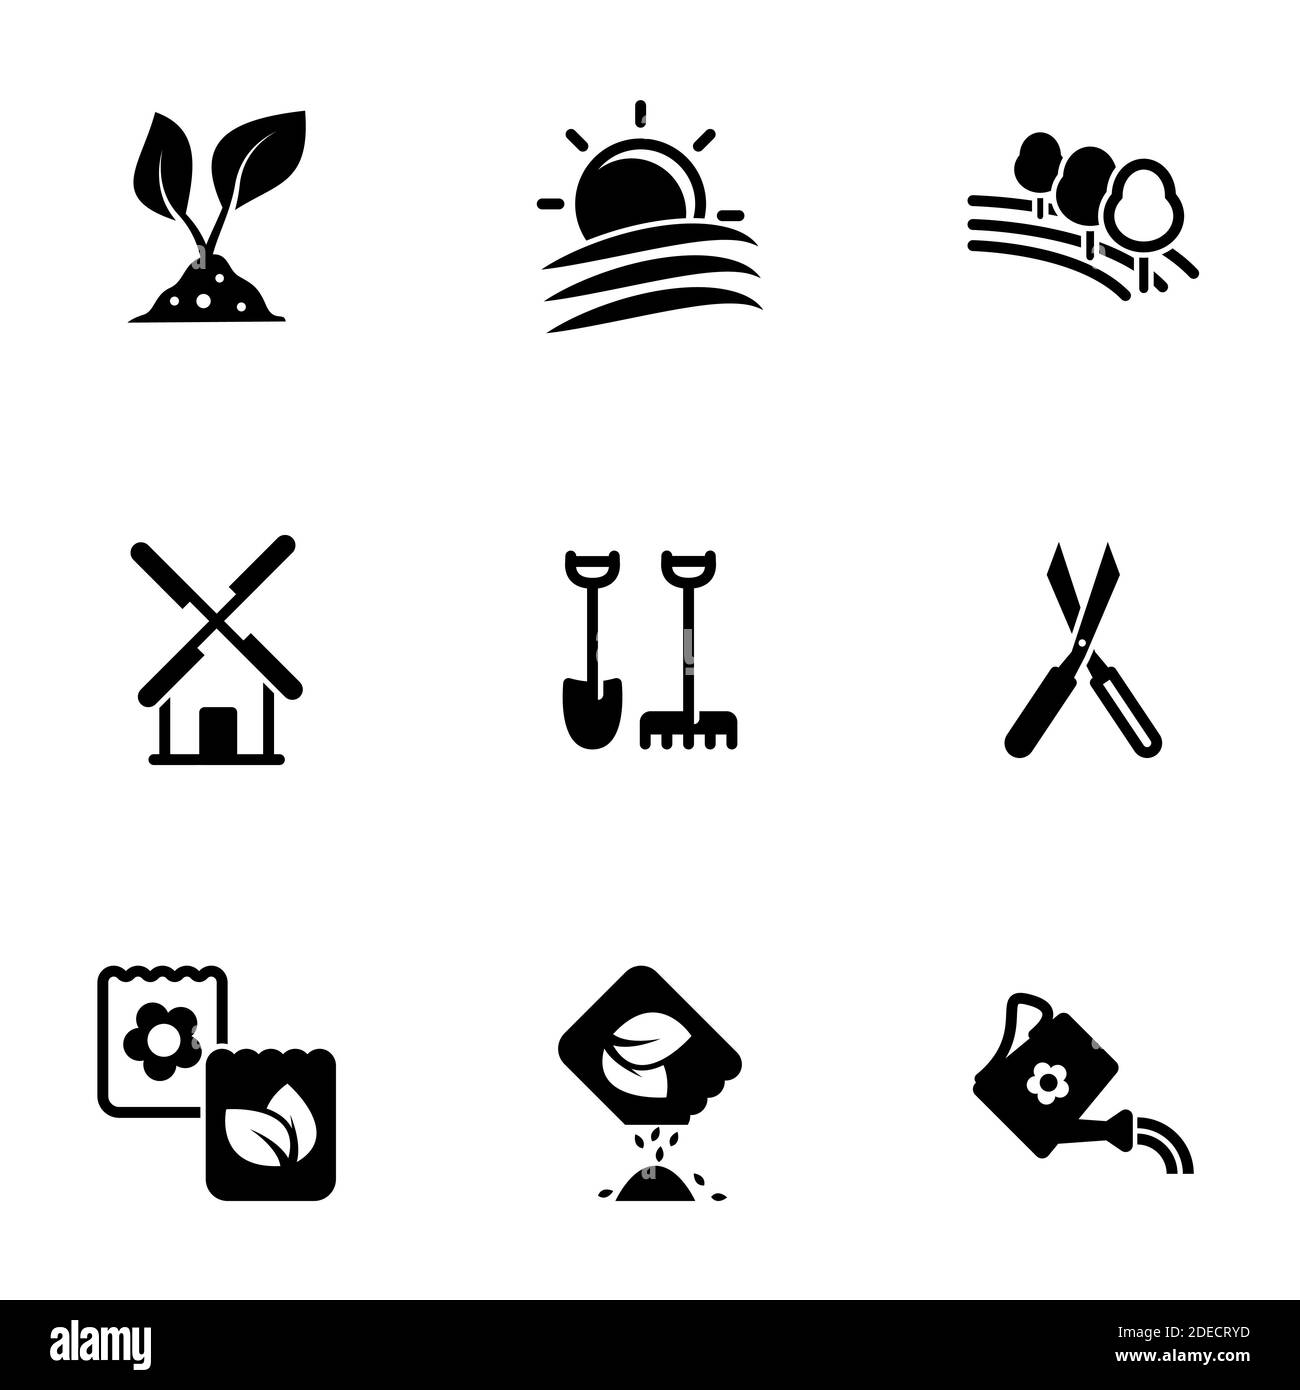 Set of simple icons on a theme Garden, garden, farming, farm, vector, set. White background Stock Vector